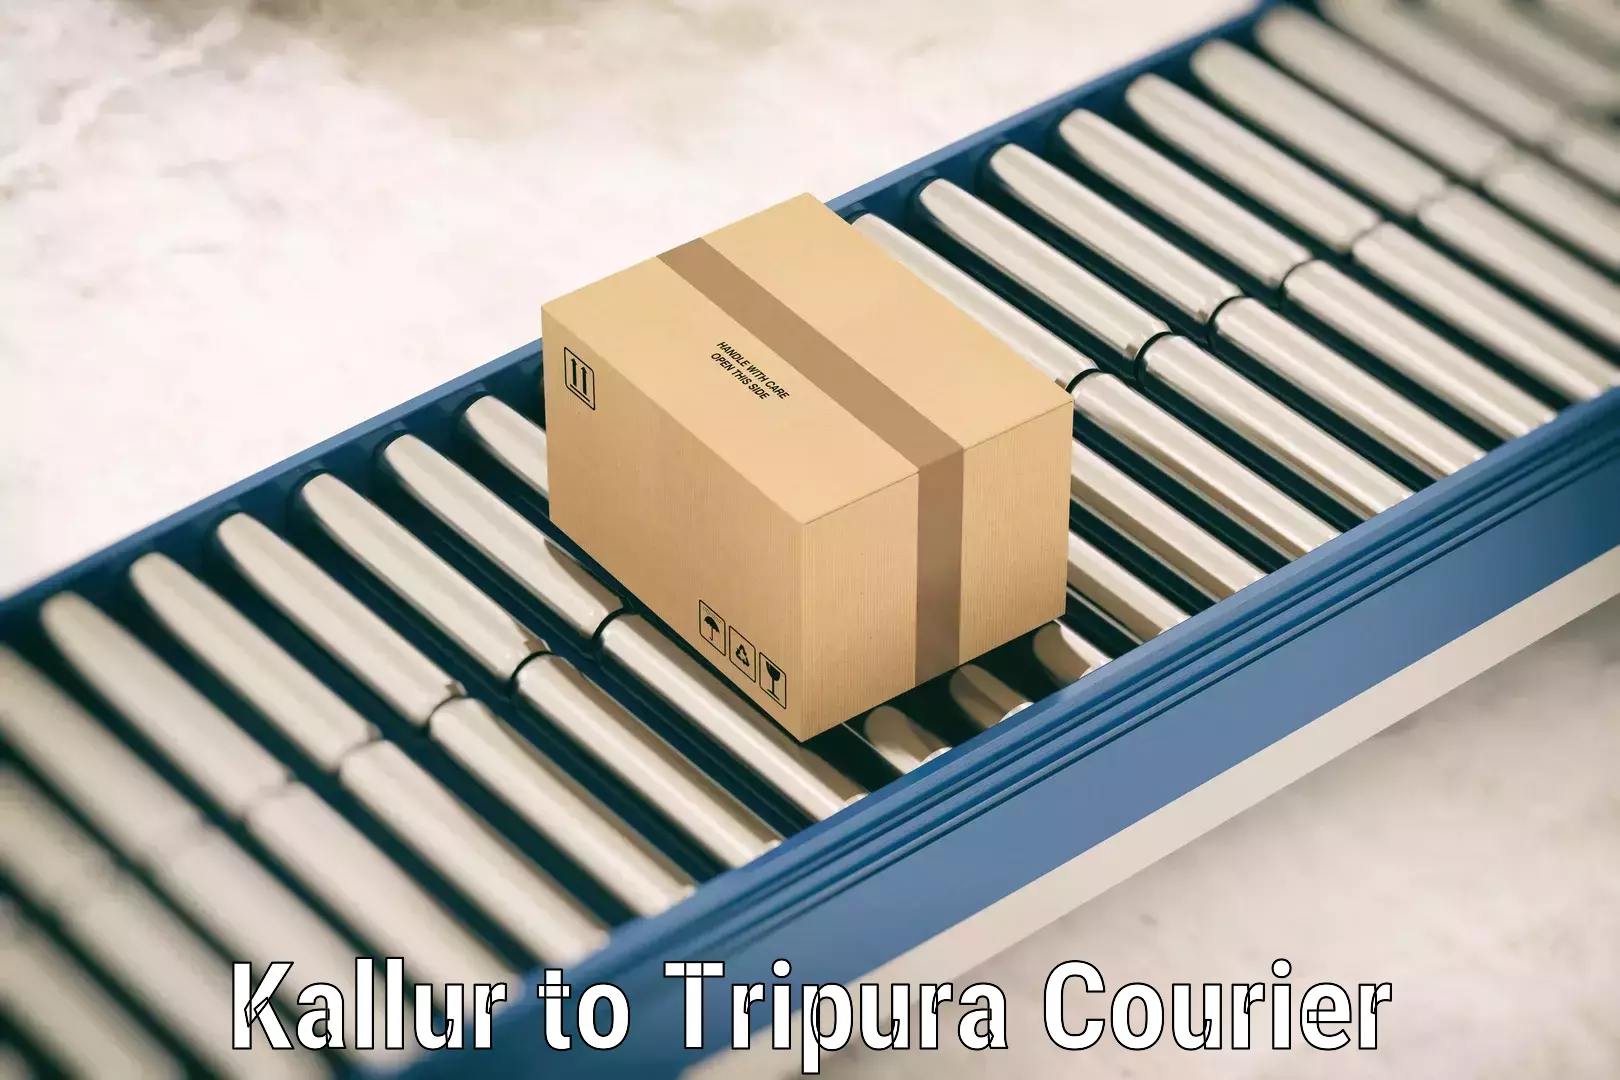 Luggage transport service Kallur to IIIT Agartala